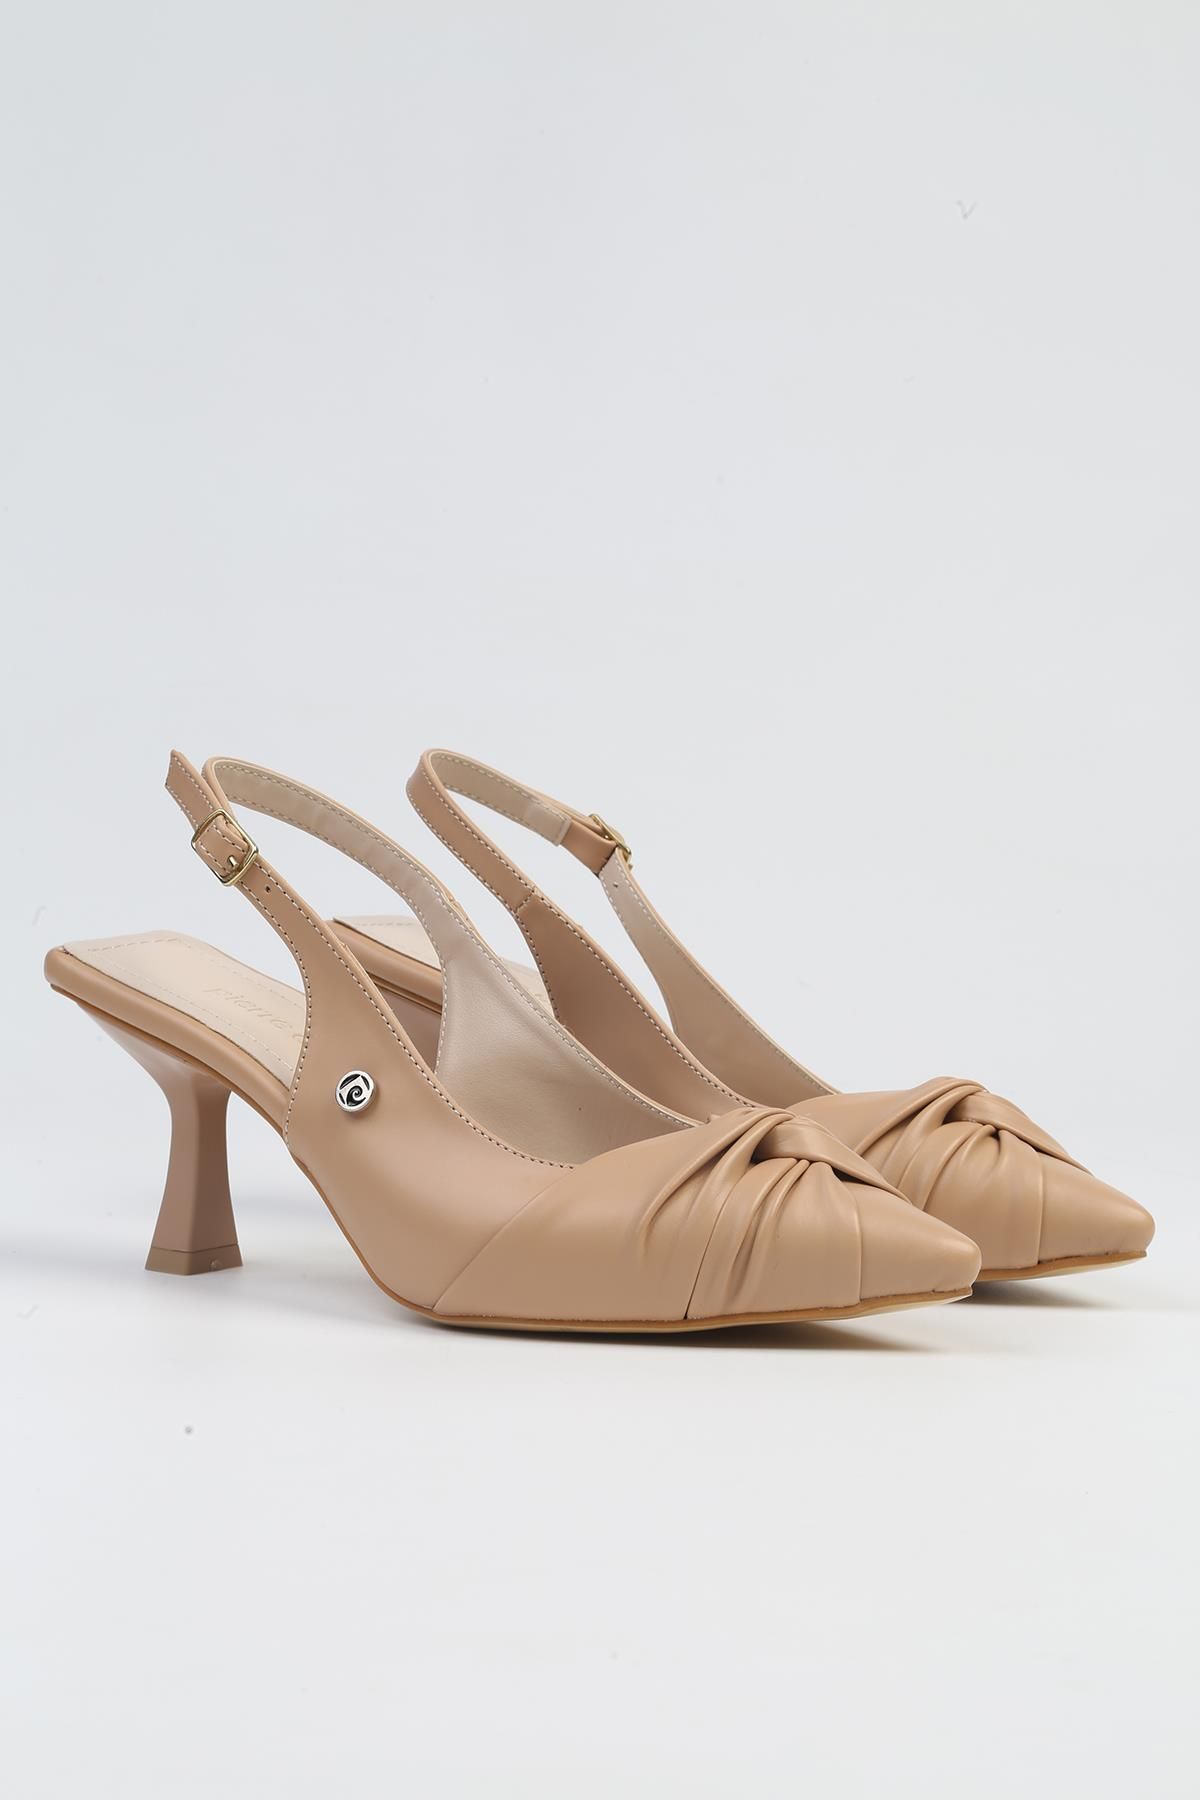 Pierre Cardin ® | PC-53111- 3592 Bej Cilt-Kadın Topuklu Ayakkabı